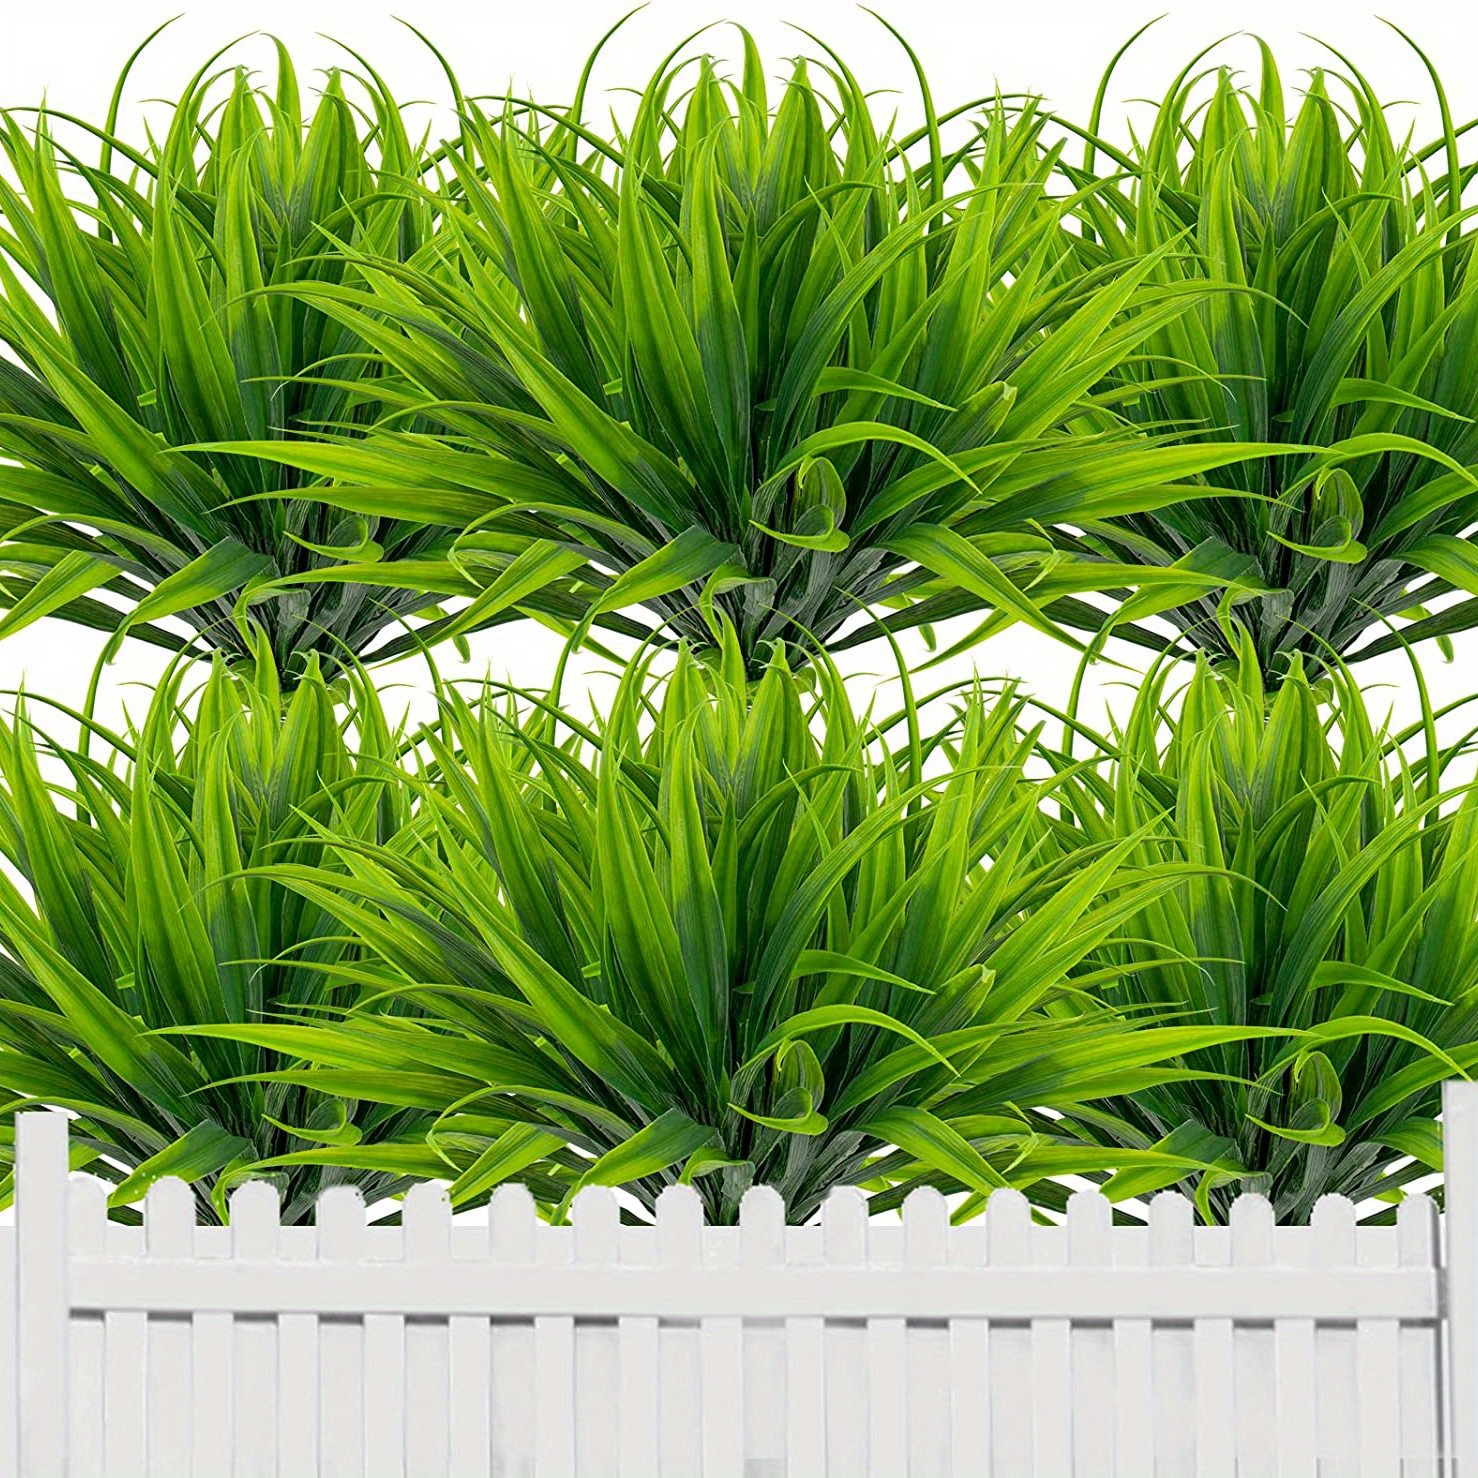 6個 人工芝フェイクプラント 屋外プラスチック植物 紫外線耐性 緑